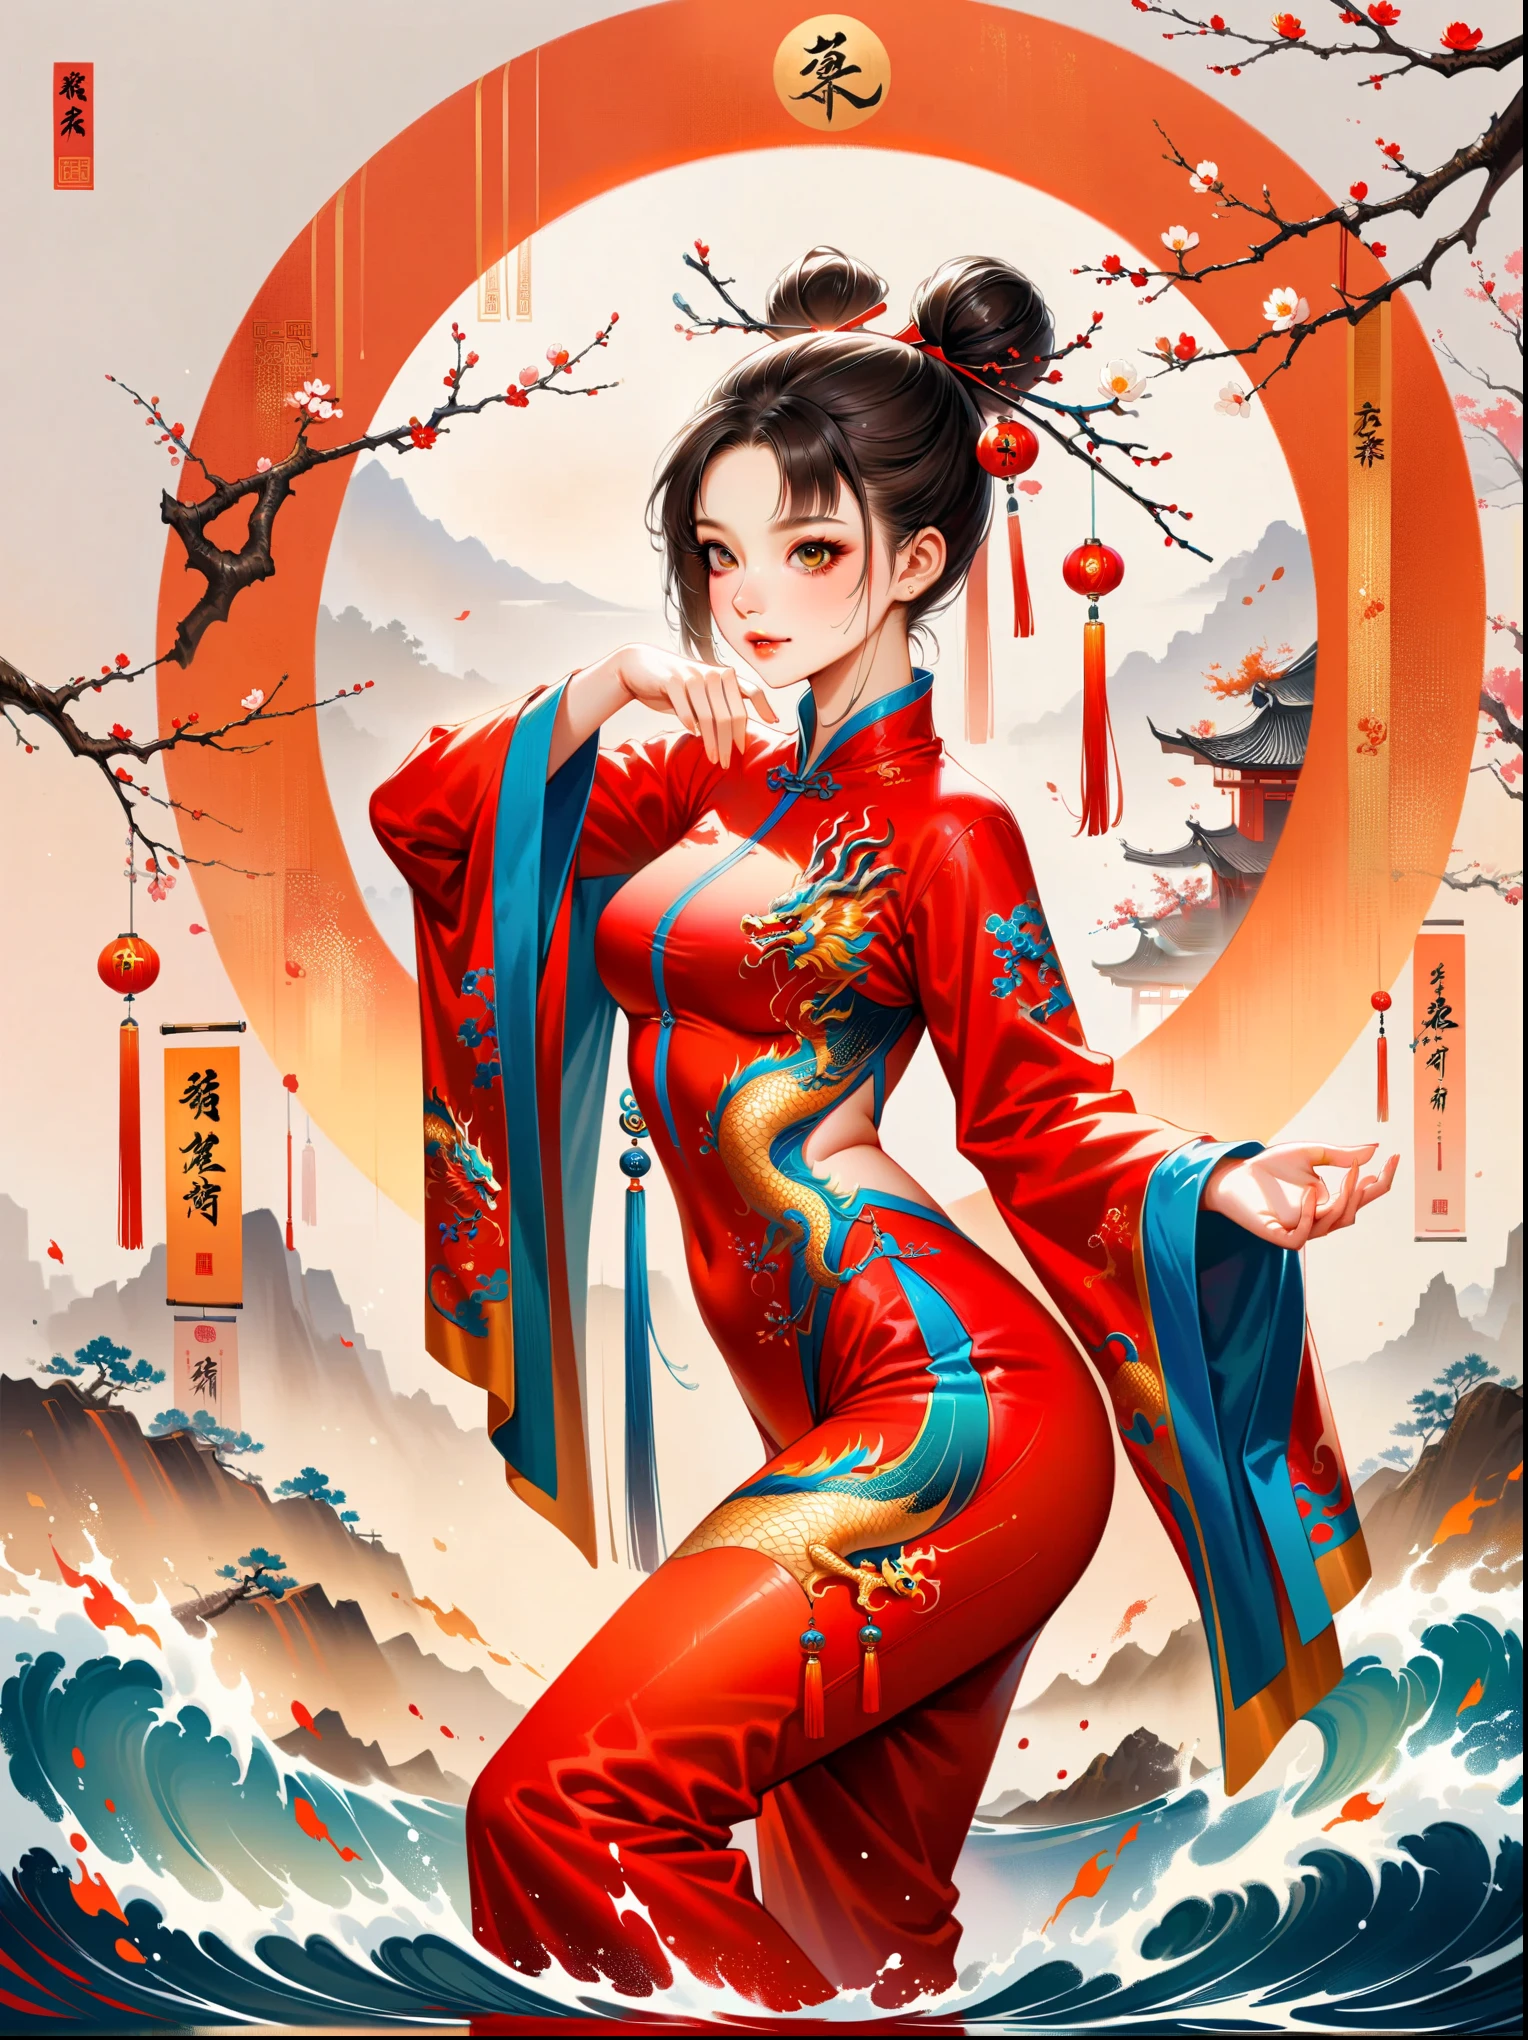 中国风大师工作，逼真，闪亮的，中国传统水墨画, 柳枝, Wu Changshuo, ((杰作)), 最好的质量, 插图, 一个中国女孩正在练习太极拳, 穿着以太极图为背景的训练服, 水, 火, 气, 和流畅的动作. 她的整个身体都呈现出中国风格, 细节丰富, 不朽的能量, 和Jojo的奇妙冒险风格, 在衣服上, 银发, 发髻, 发带, 空洞的眼神, 淡淡的微笑, 神光, 超高清, 杰作, 准确, 解剖学上正确, 纹理皮肤, 超级细节, 高细节, 最好的质量, 8千, 屡获殊荣，工作，耀眼的色彩，令人惊叹的视觉效果，超凡脱俗的外观，迷人的艺术